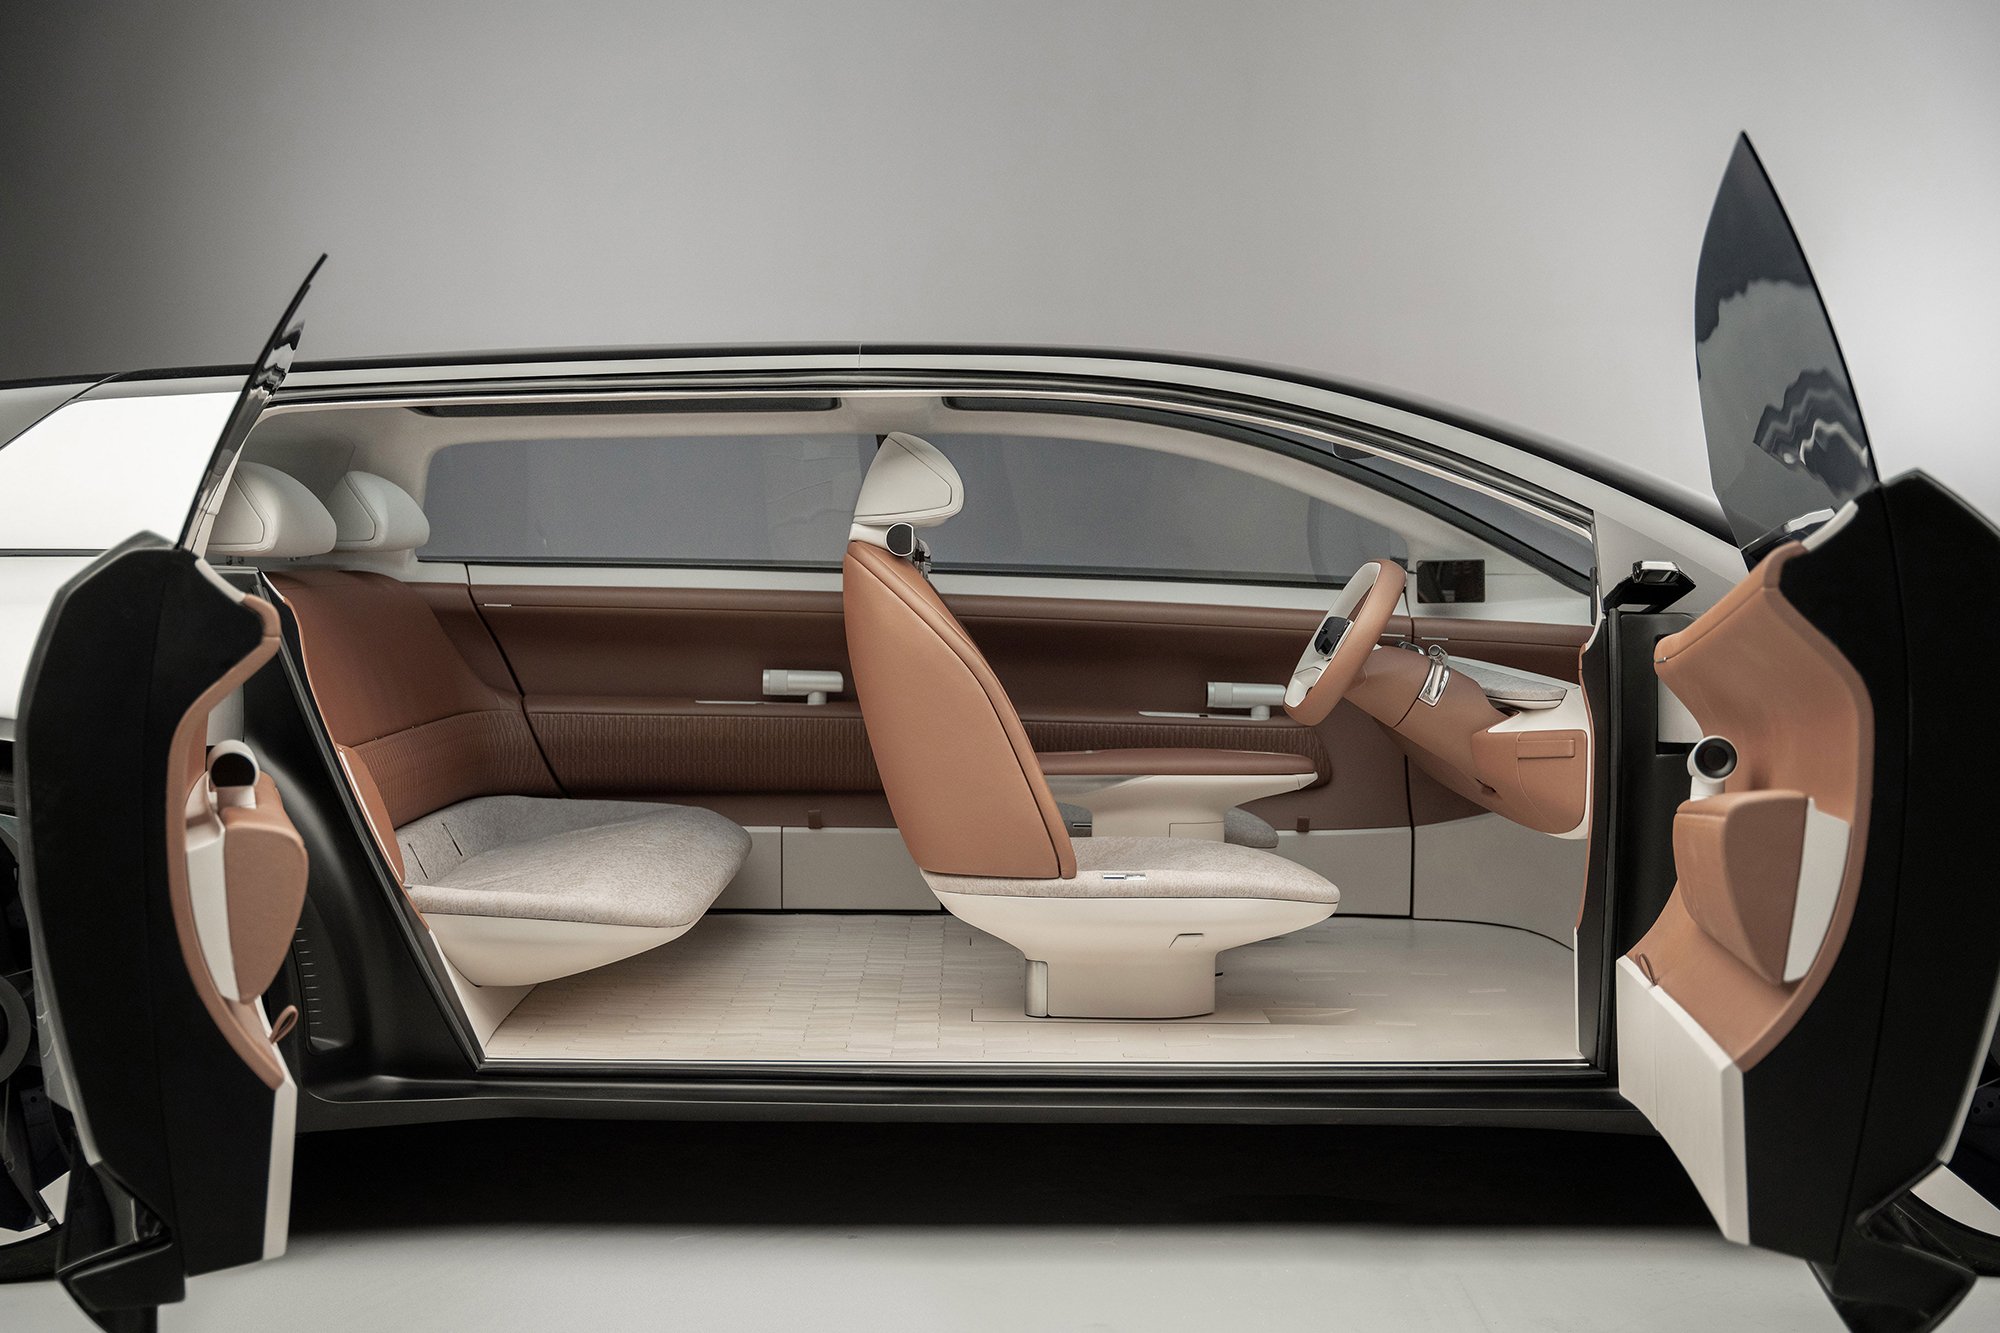 The interior design of Tata Motors's new electric cepnpt car The exterior design of Tata Motor's new electric concept car AVINYA